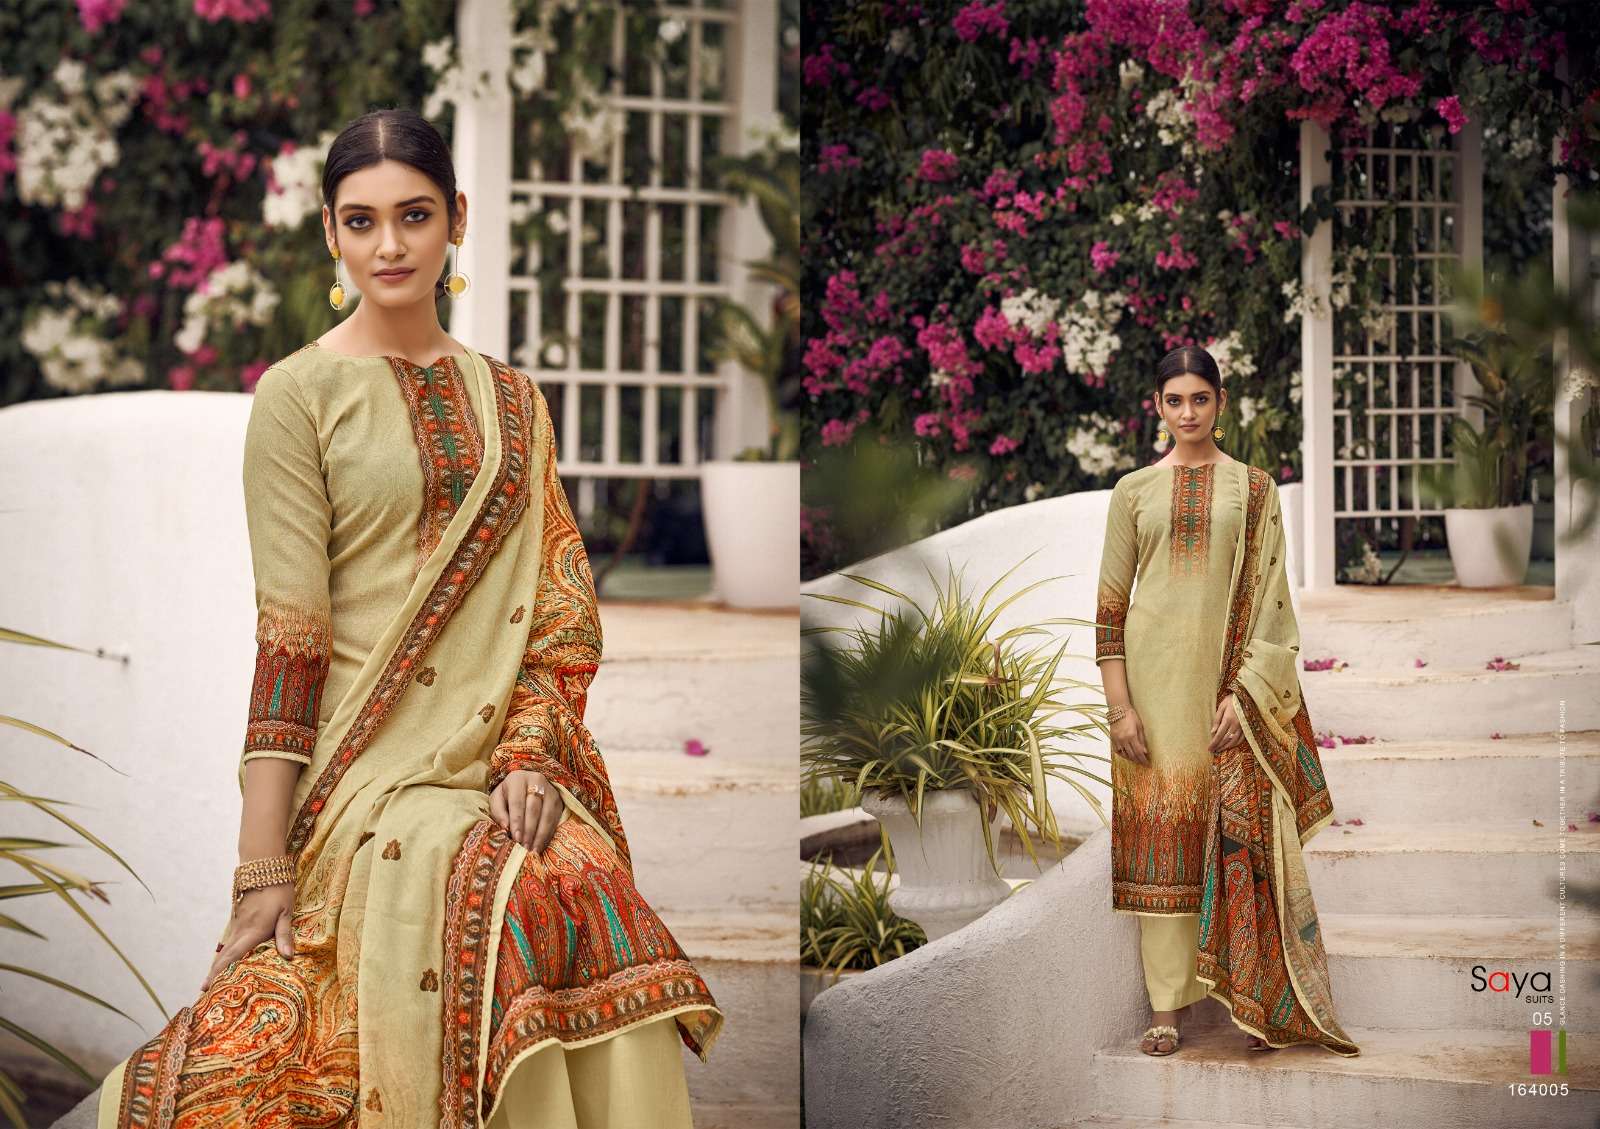 saya suits flora 164001-164006 series trendy designer salwar kameez catalogue collection 2023 